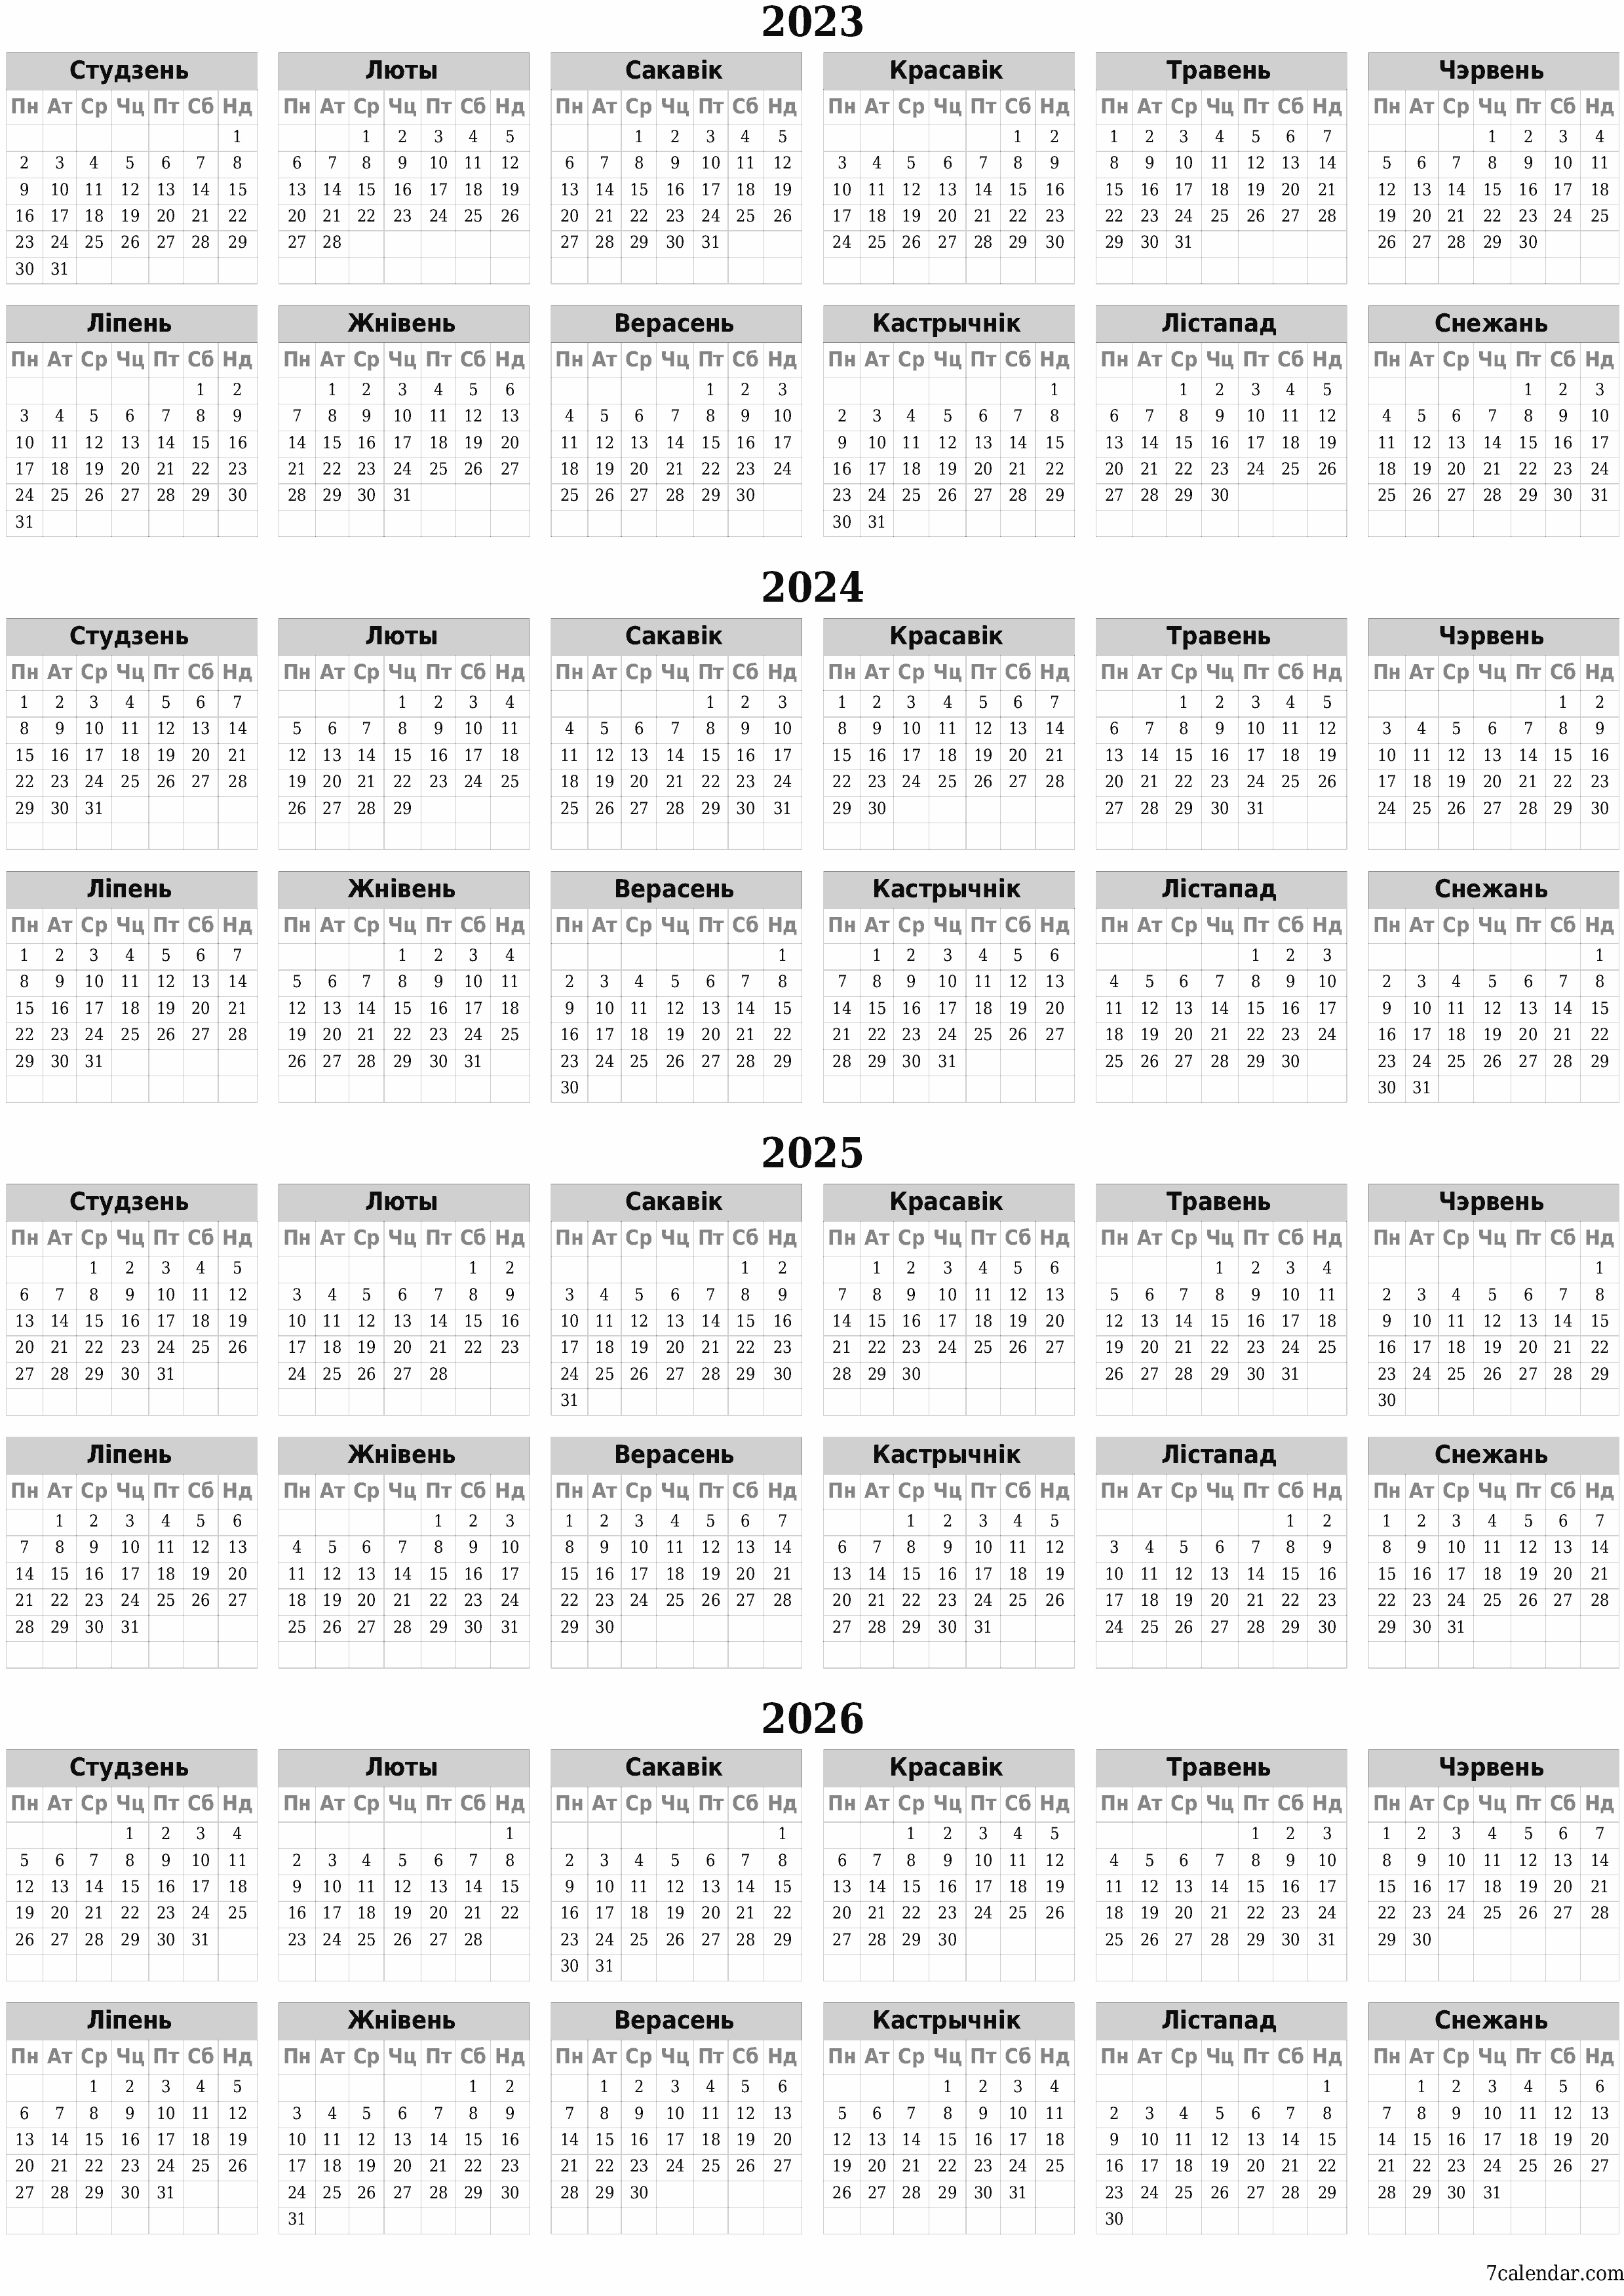  для друку насценны шаблон календара бясплатны вертыкальны Штогадовы каляндар Сакавік (Сак) 2023